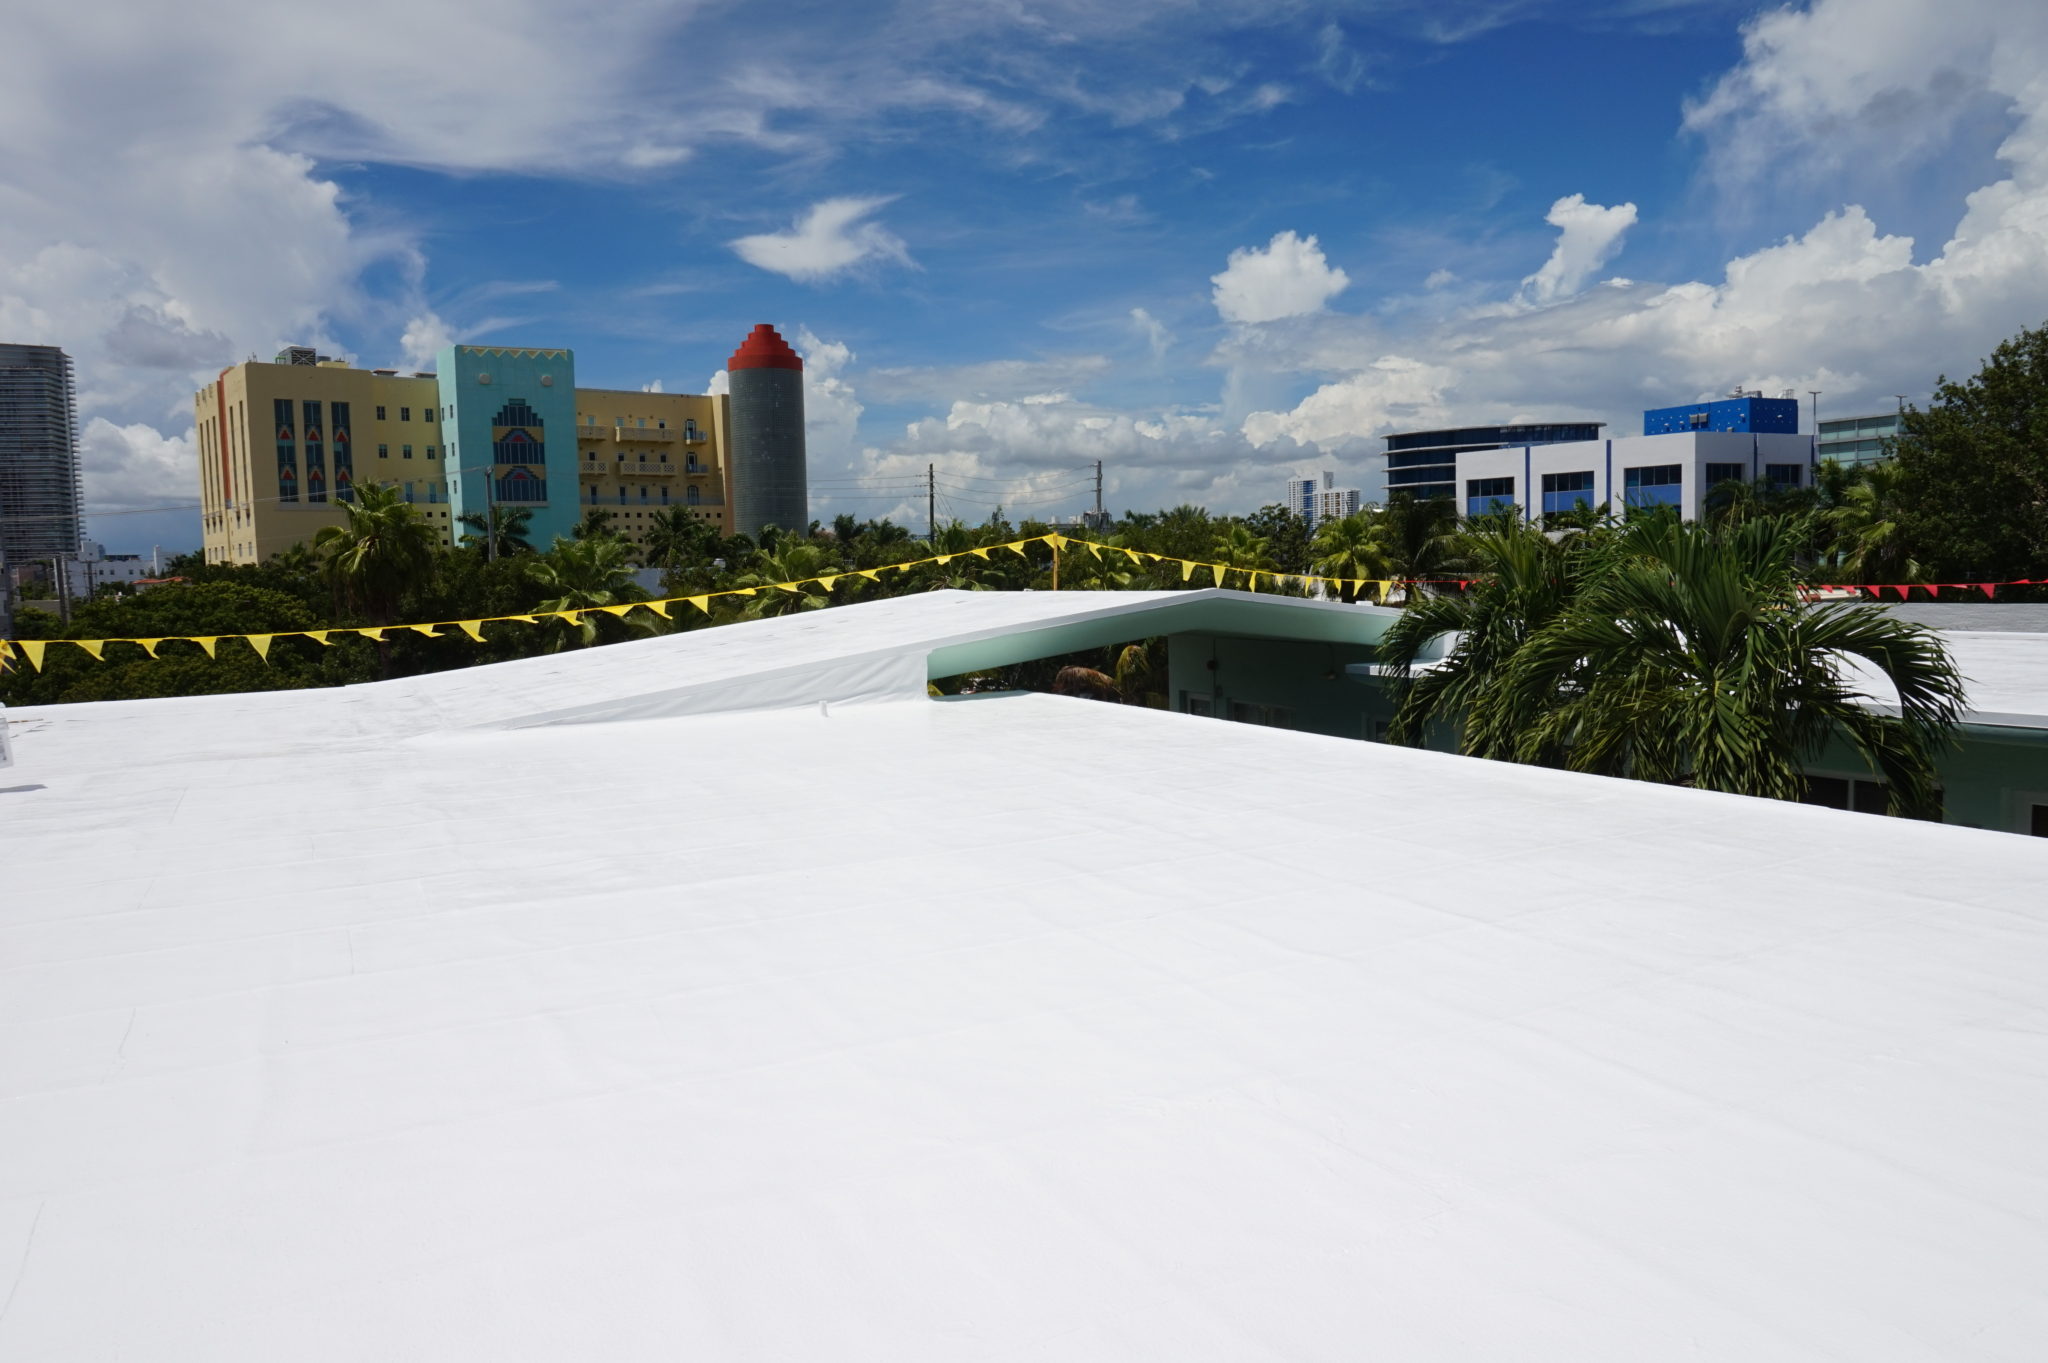 Miami condominium silicone roof coating